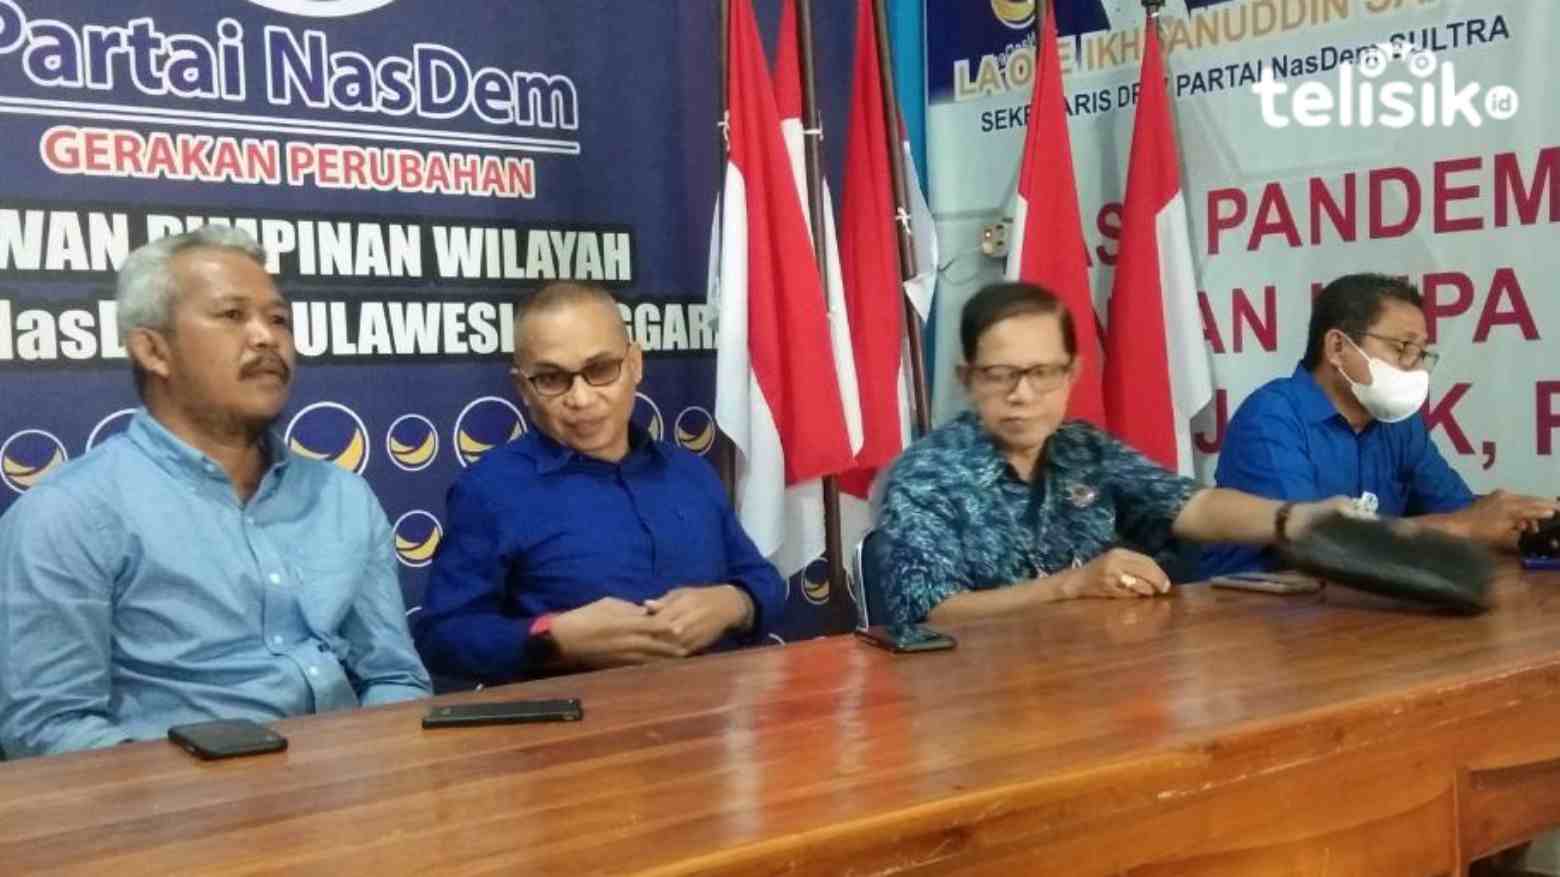 Ali Mazi Ganti Tony Herbiansyah, Pengurus: Tak Ada Pelengseran Ketua di NasDem